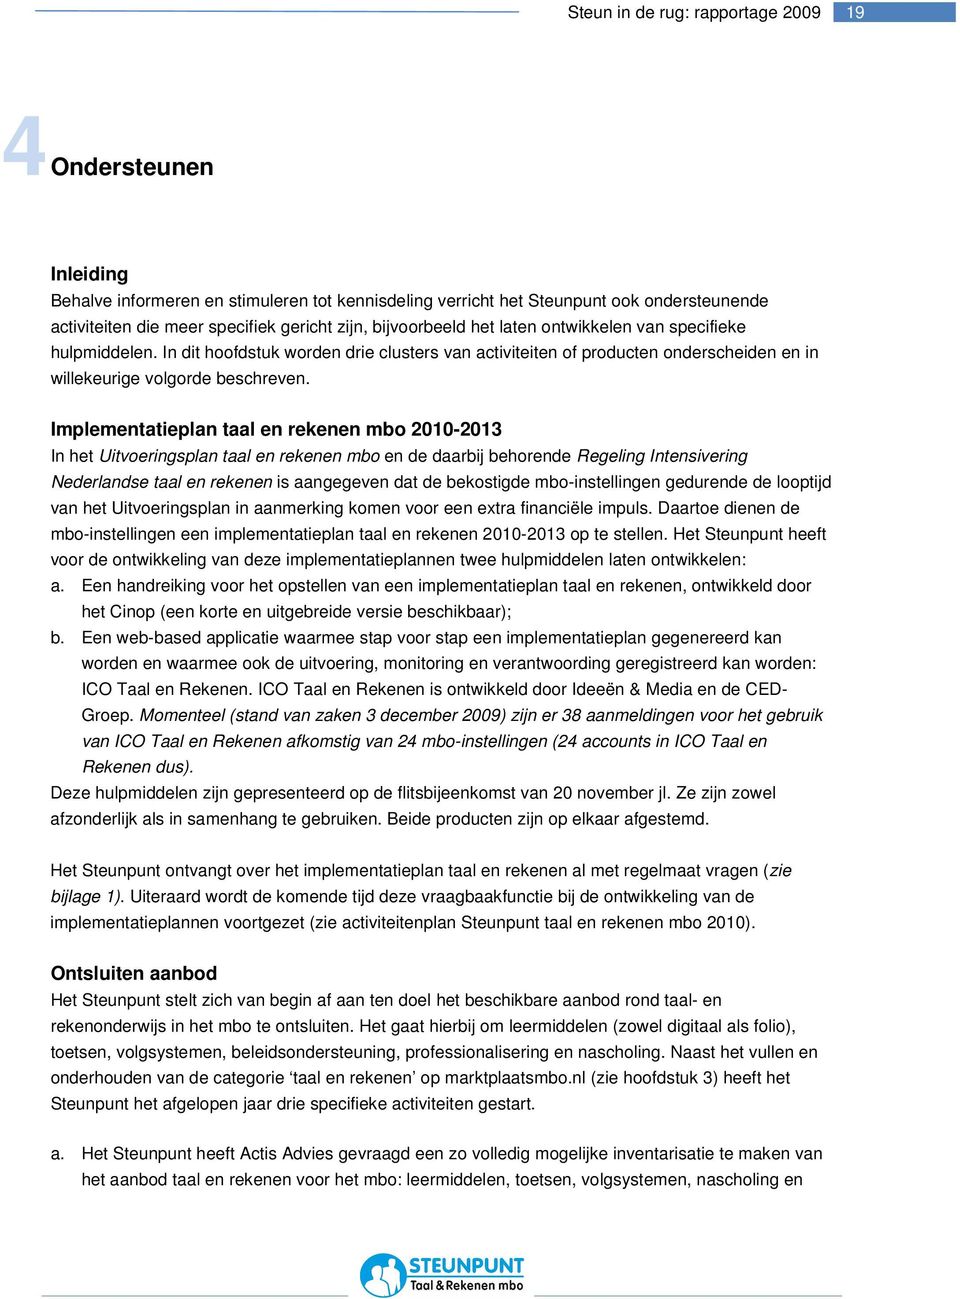 Implementatieplan taal en rekenen mbo 2010-2013 In het Uitvoeringsplan taal en rekenen mbo en de daarbij behorende Regeling Intensivering Nederlandse taal en rekenen is aangegeven dat de bekostigde